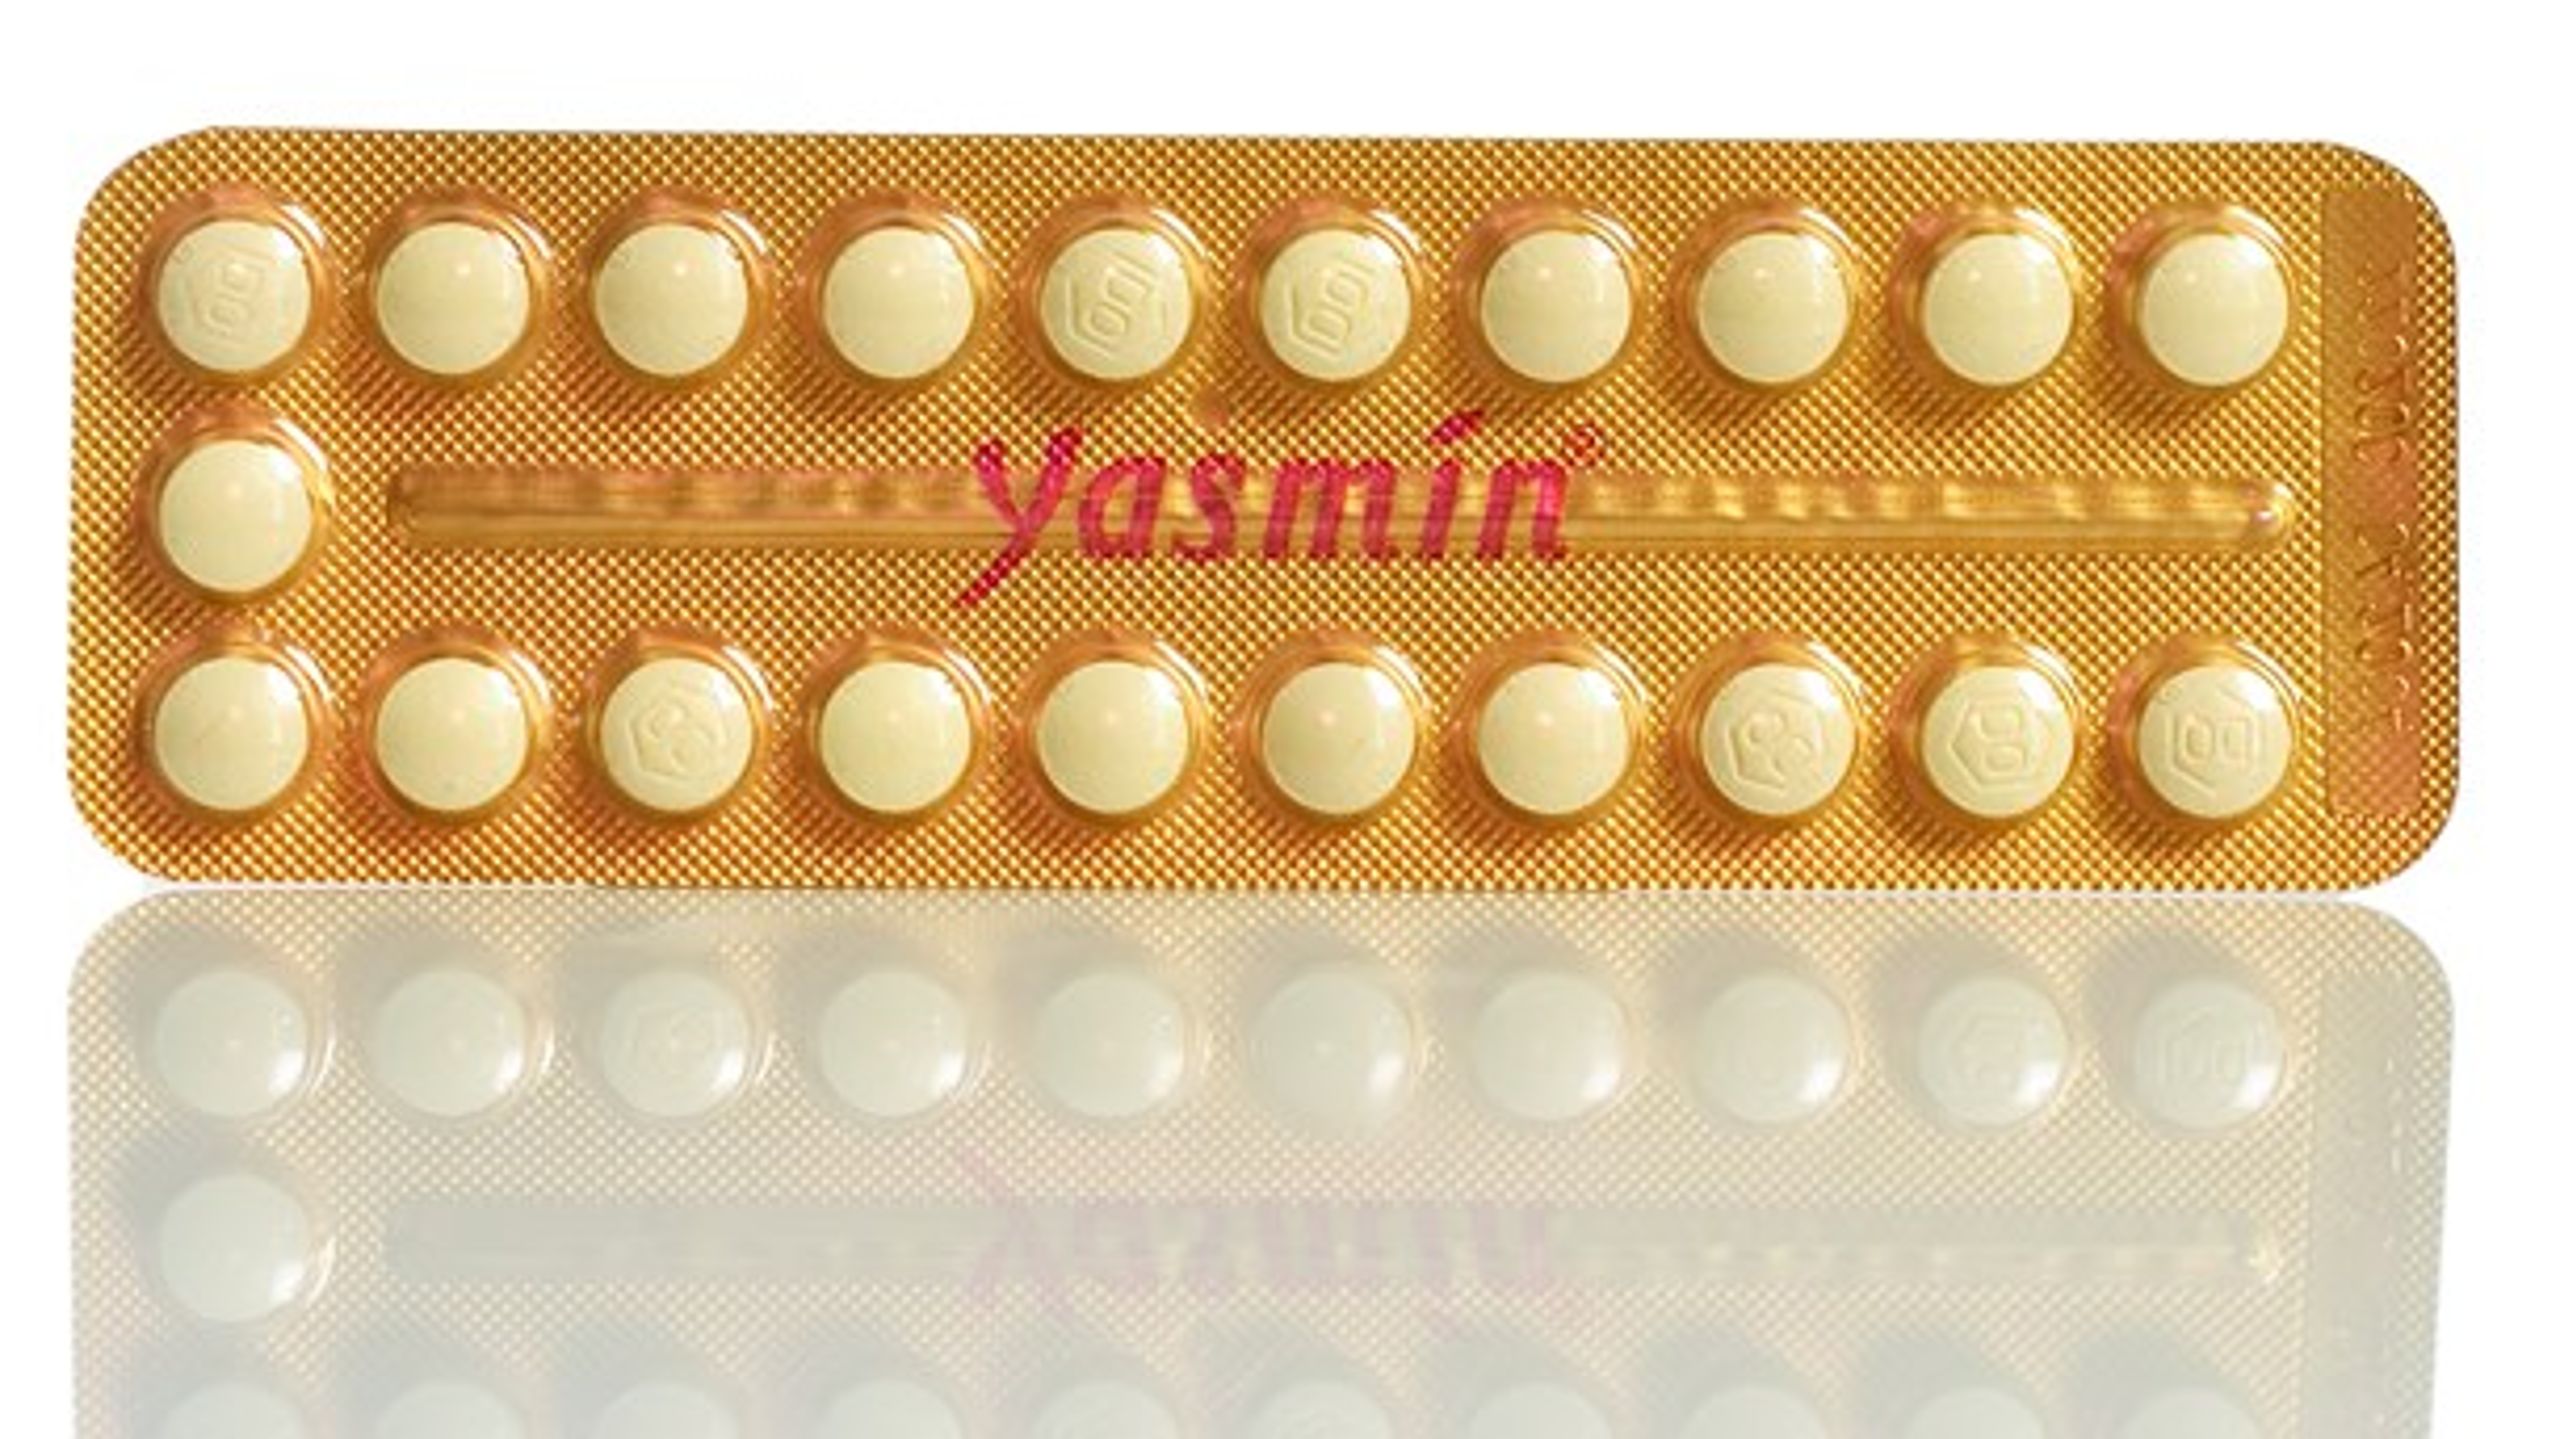 Mange danske unge bruger hormonel prævention i stedet for kondom og risikerer dermed smitte med klamydia.